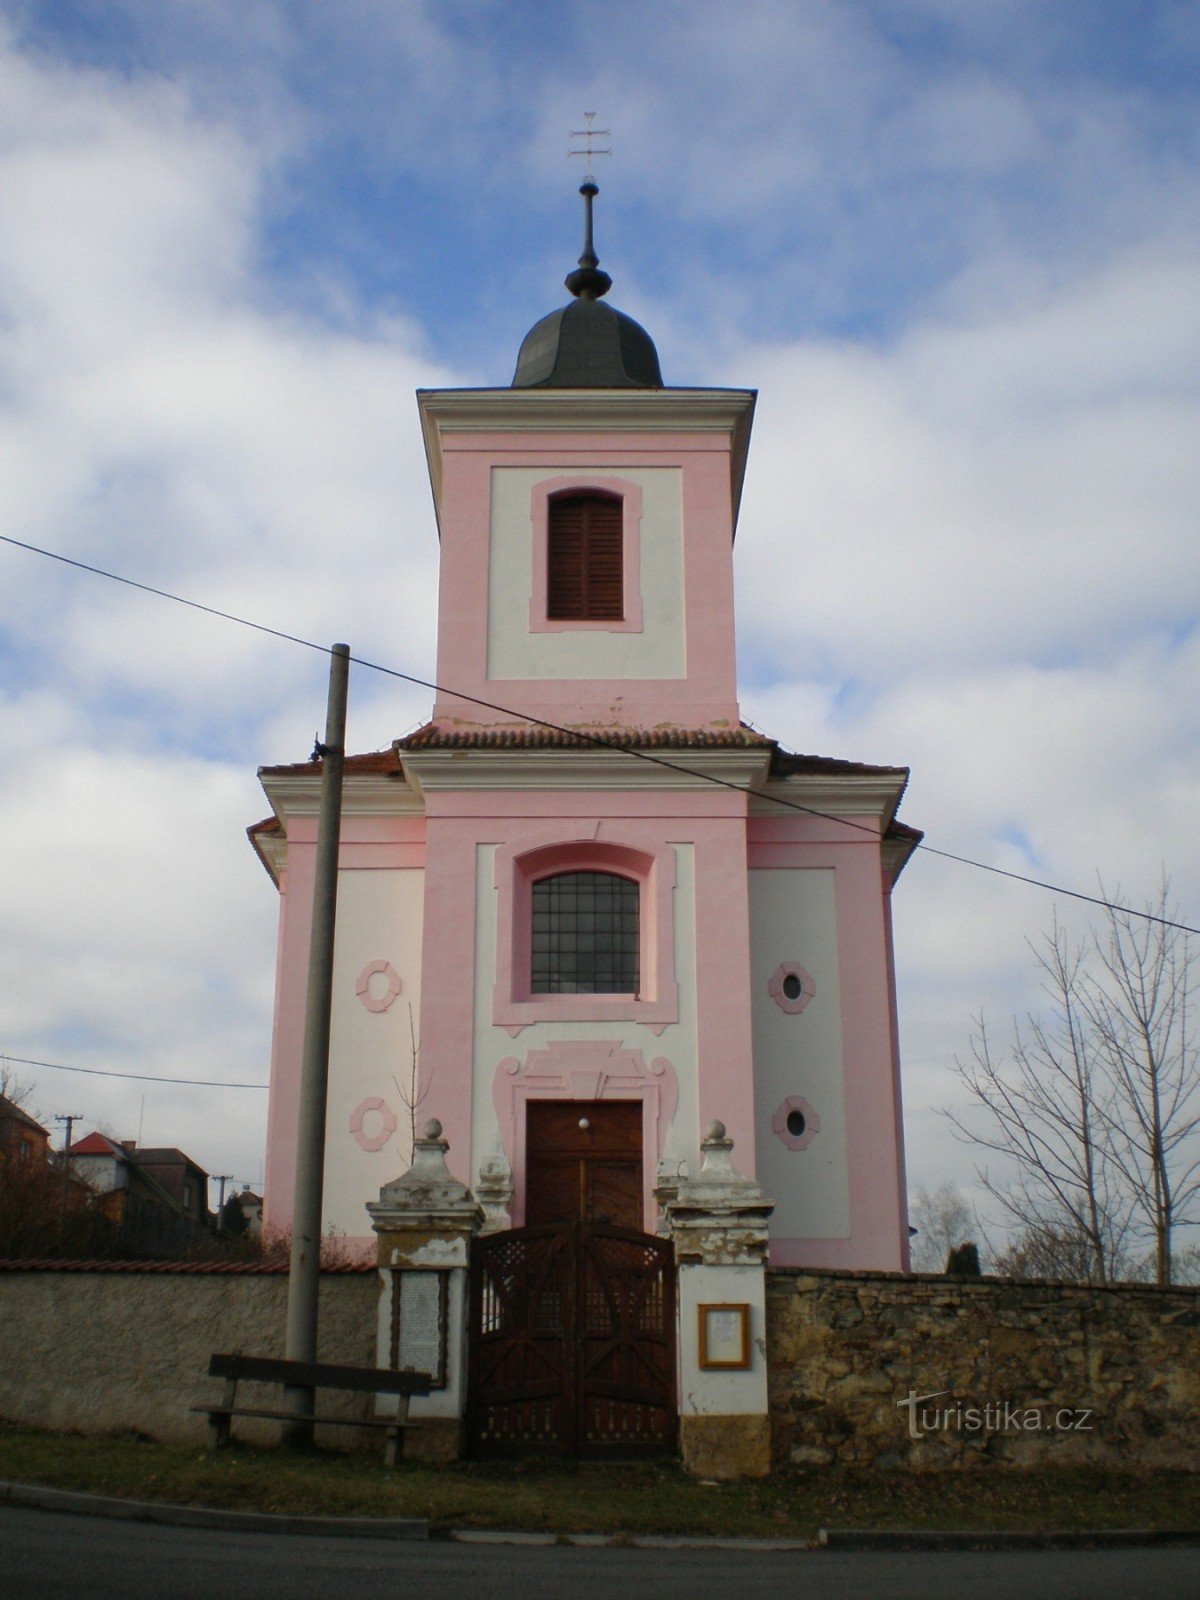 Ville - Église de St. Jakub